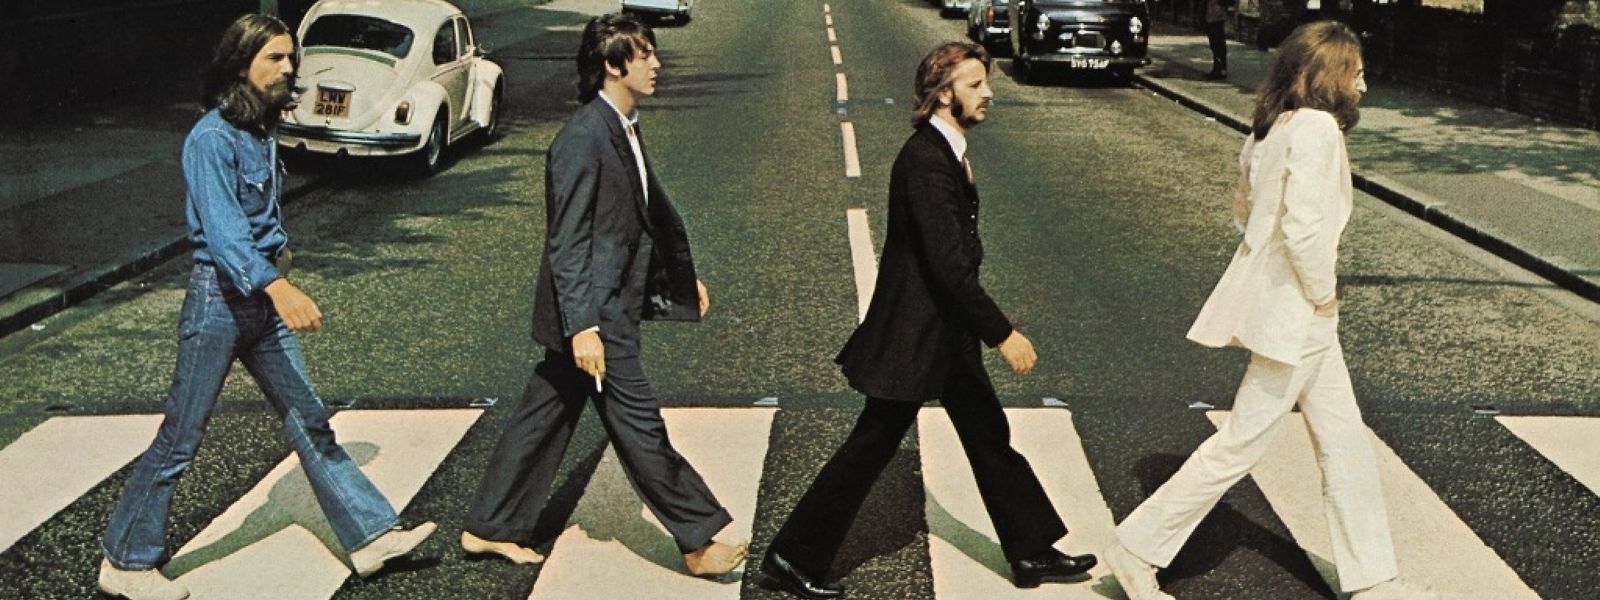 Vor 50 Jahre wurde das Album Abbey Road von den Beatles veröffentlicht. Das Album wurde nach der gleichnamigen Straße im Londoner Stadtteil St. John's Wood benannt.